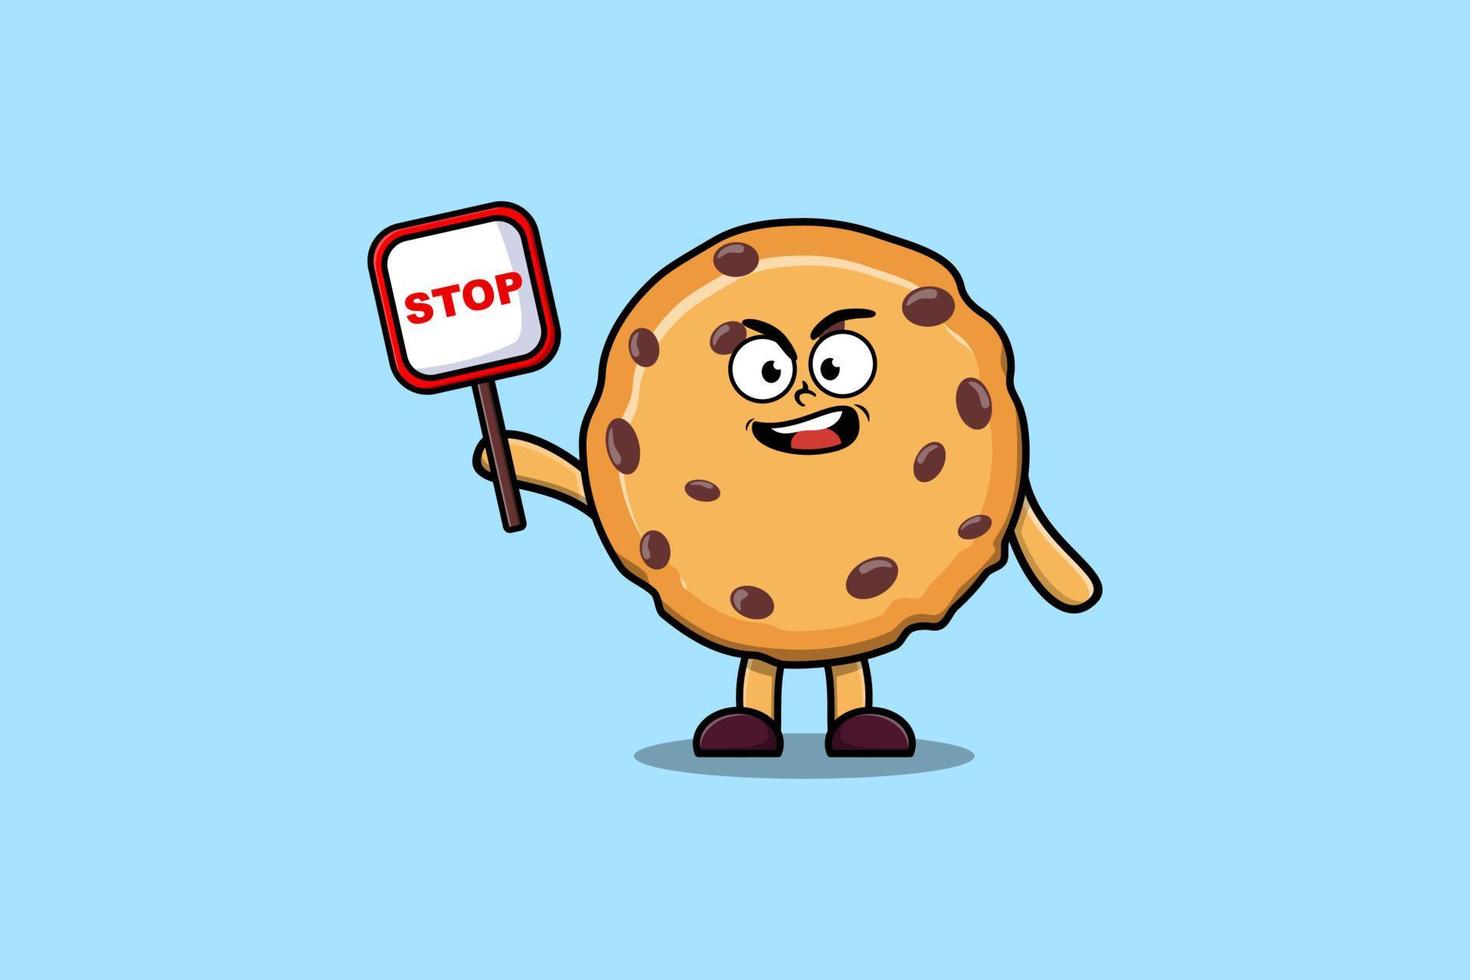 biscoitos de ilustração bonito dos desenhos animados com sinal de stop vetor